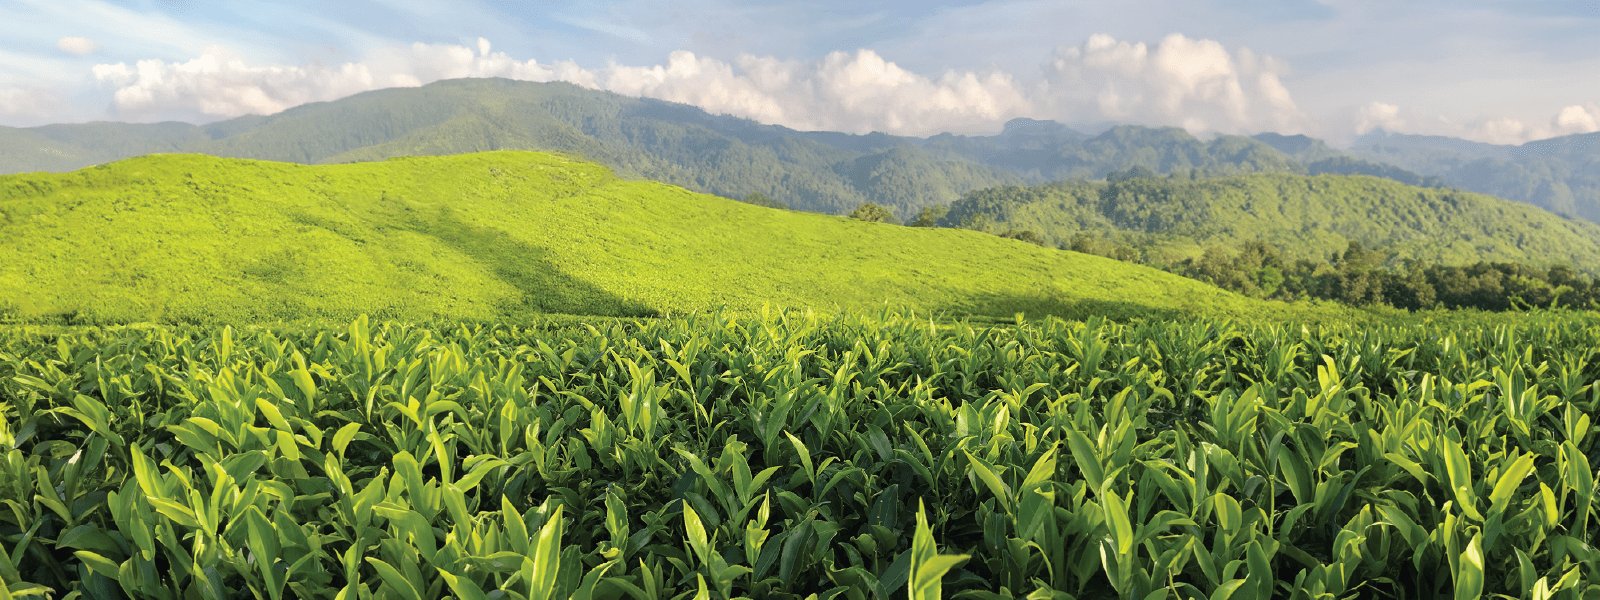 Assam Tea - India image